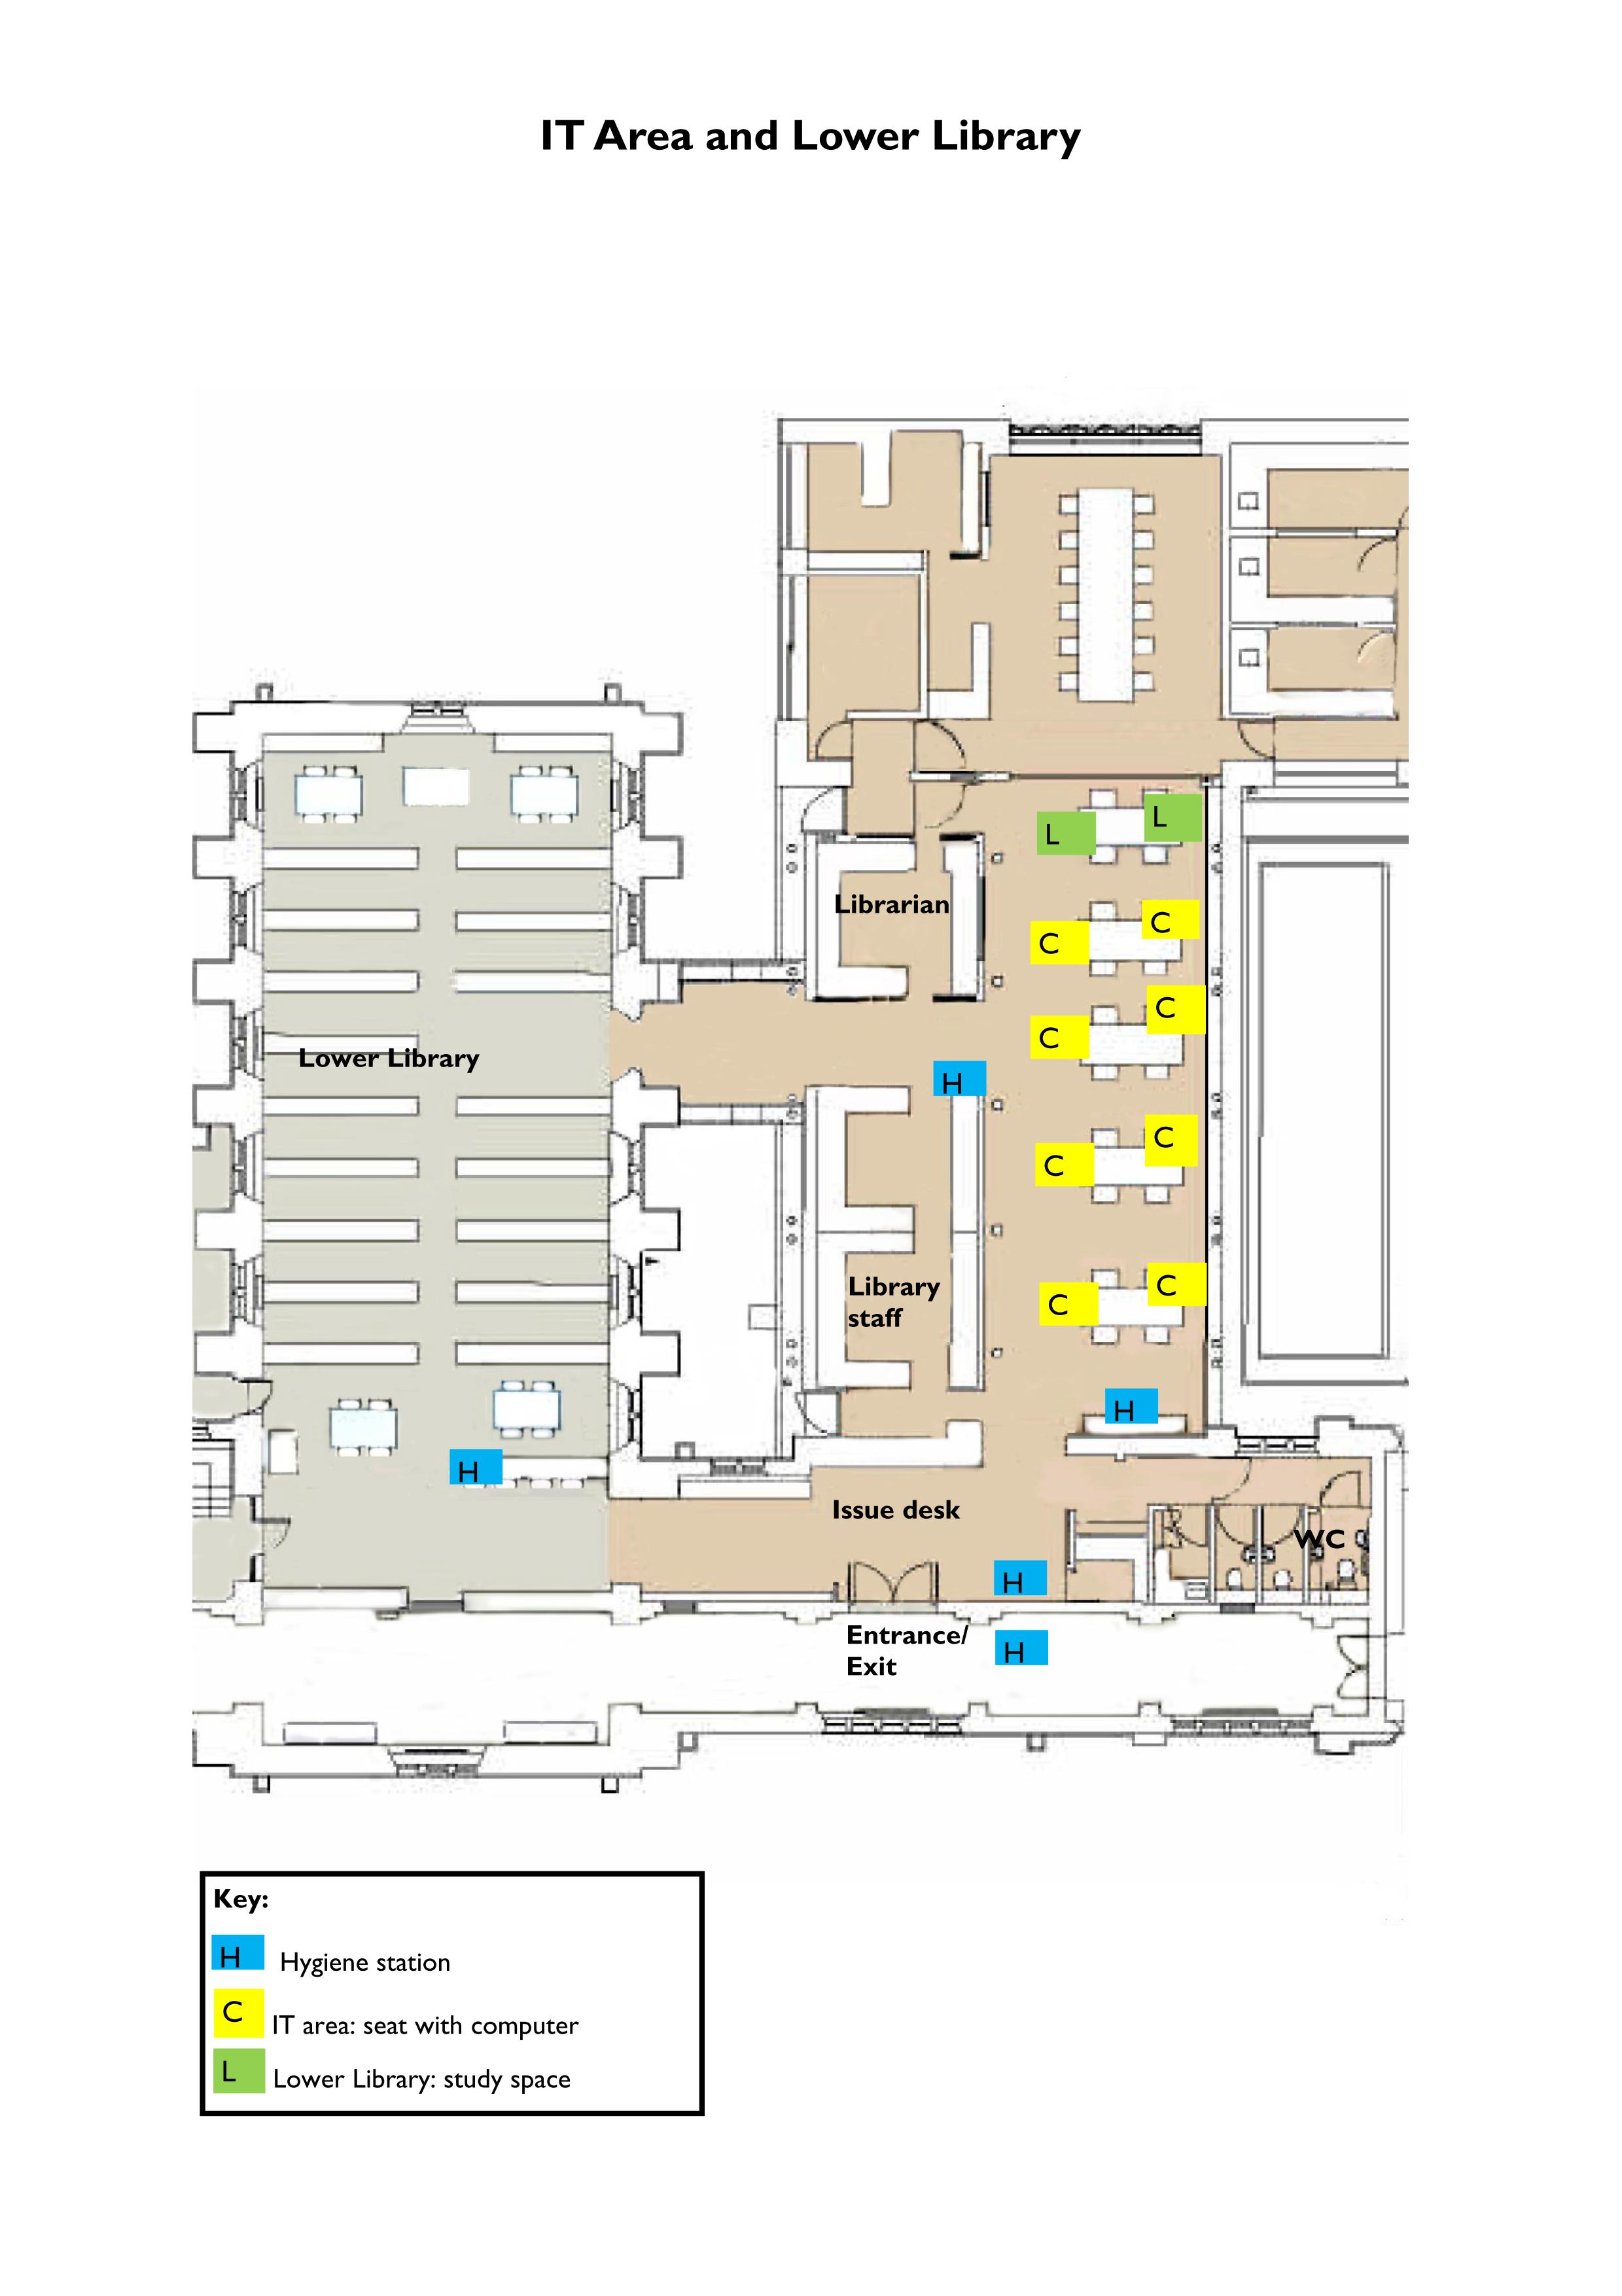 Floor plan of the IT Area